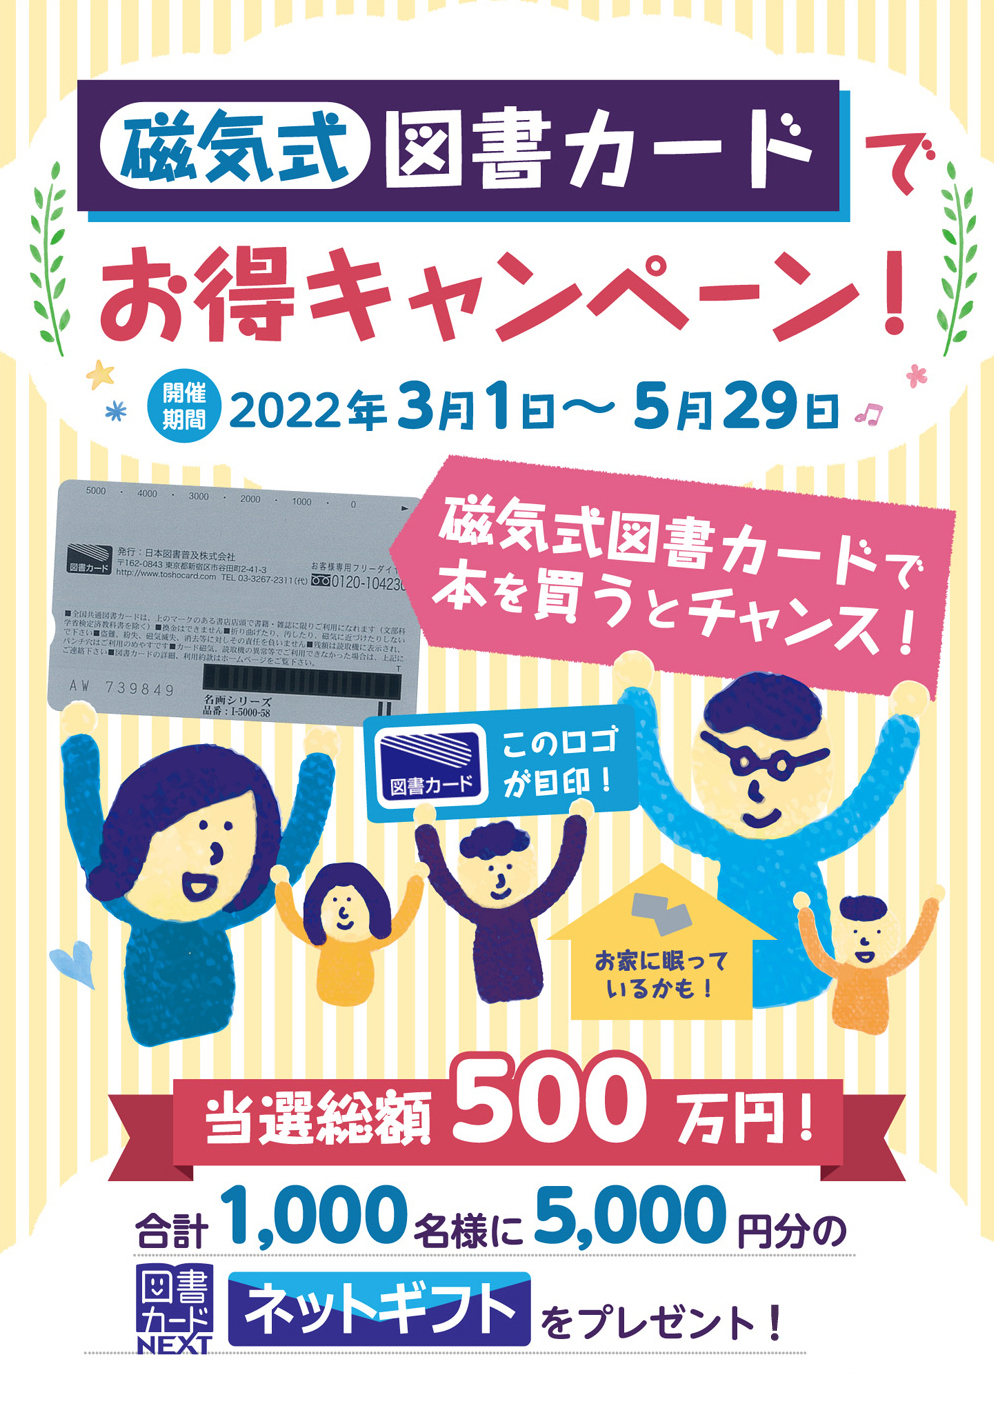 旧タイプの図書カード活用を促す 磁気式図書カードでお得キャンペーン を全国5 000店以上の書店で開催 日本出版販売株式会社のプレスリリース